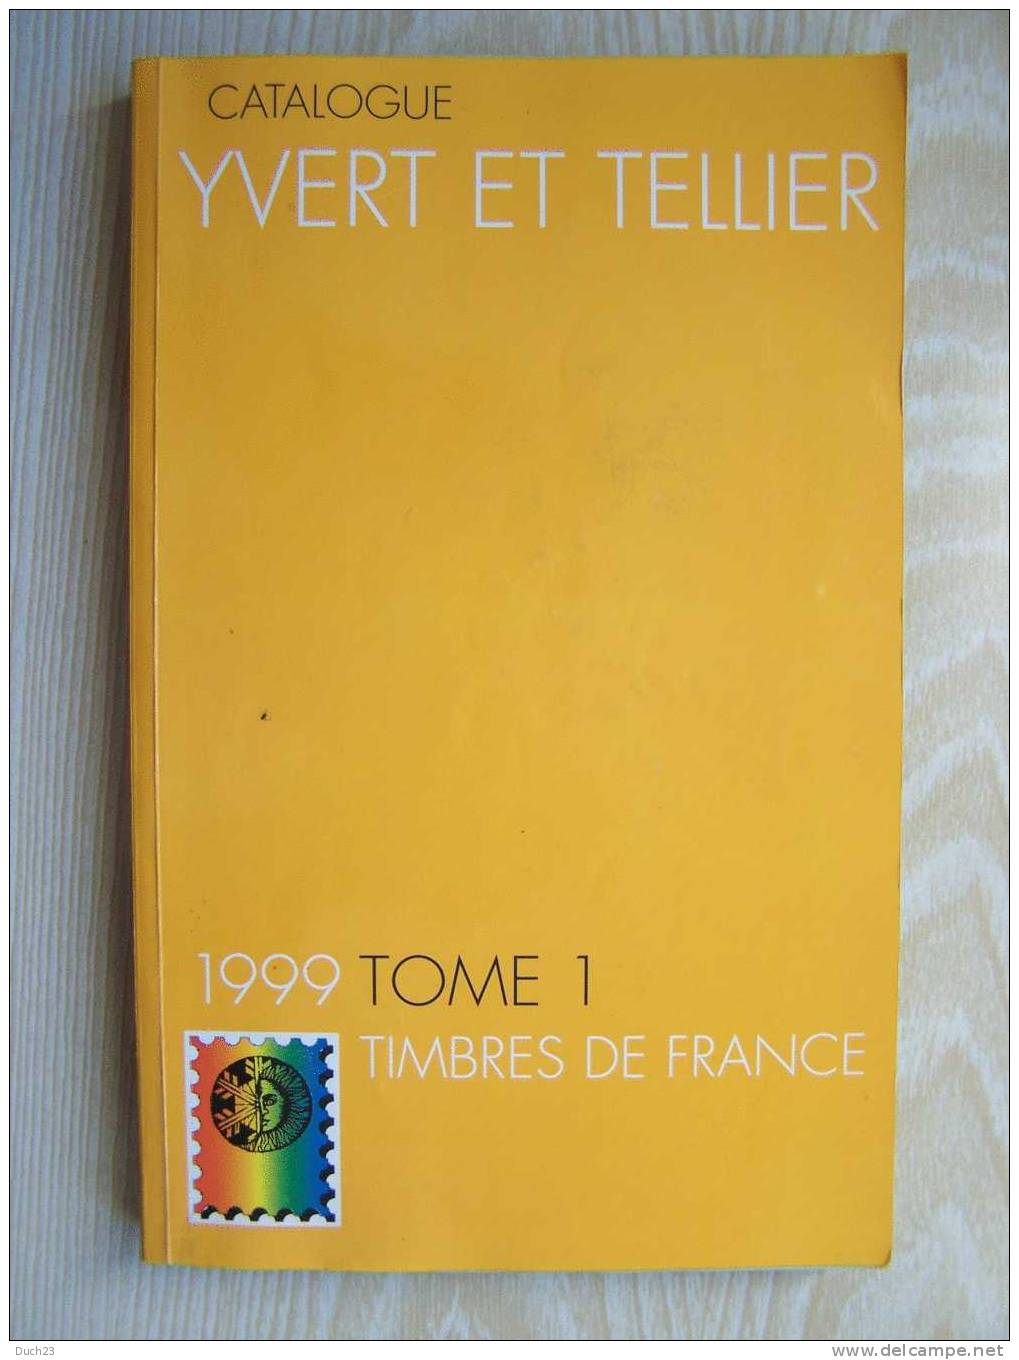 CATALOGUE DE COTATION YVERT ET TELLIER ANNEE 1999 TOME 1  TRES BON ETAT   REF CD - Francia